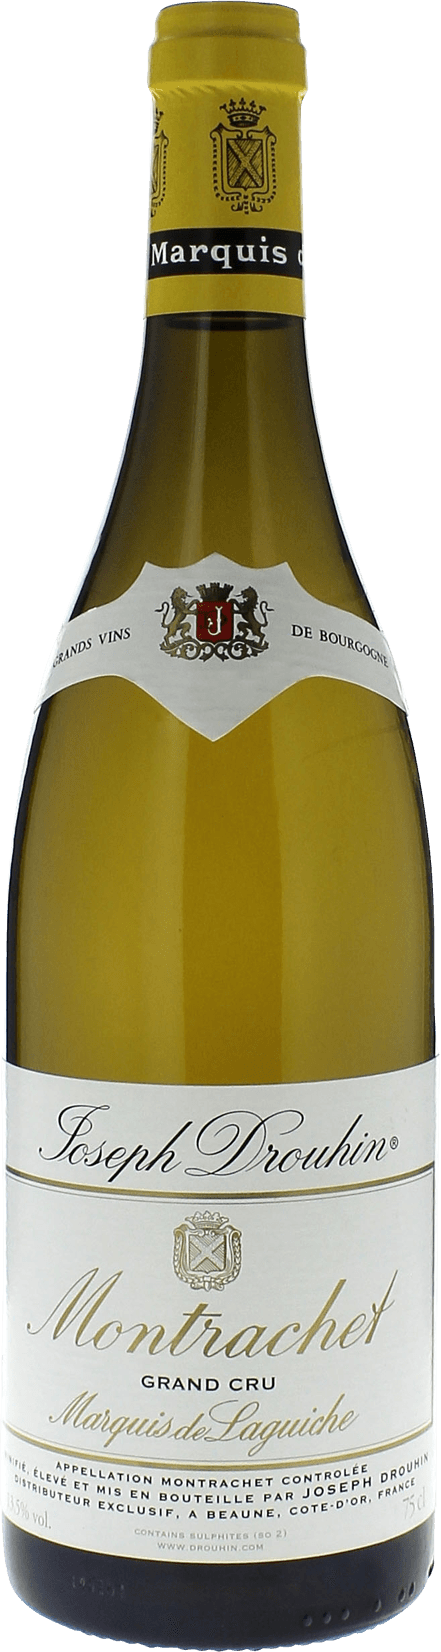 Chassagne montrachet 1er cru marquis de laguiche 2018 Domaine Joseph DROUHIN, Bourgogne blanc